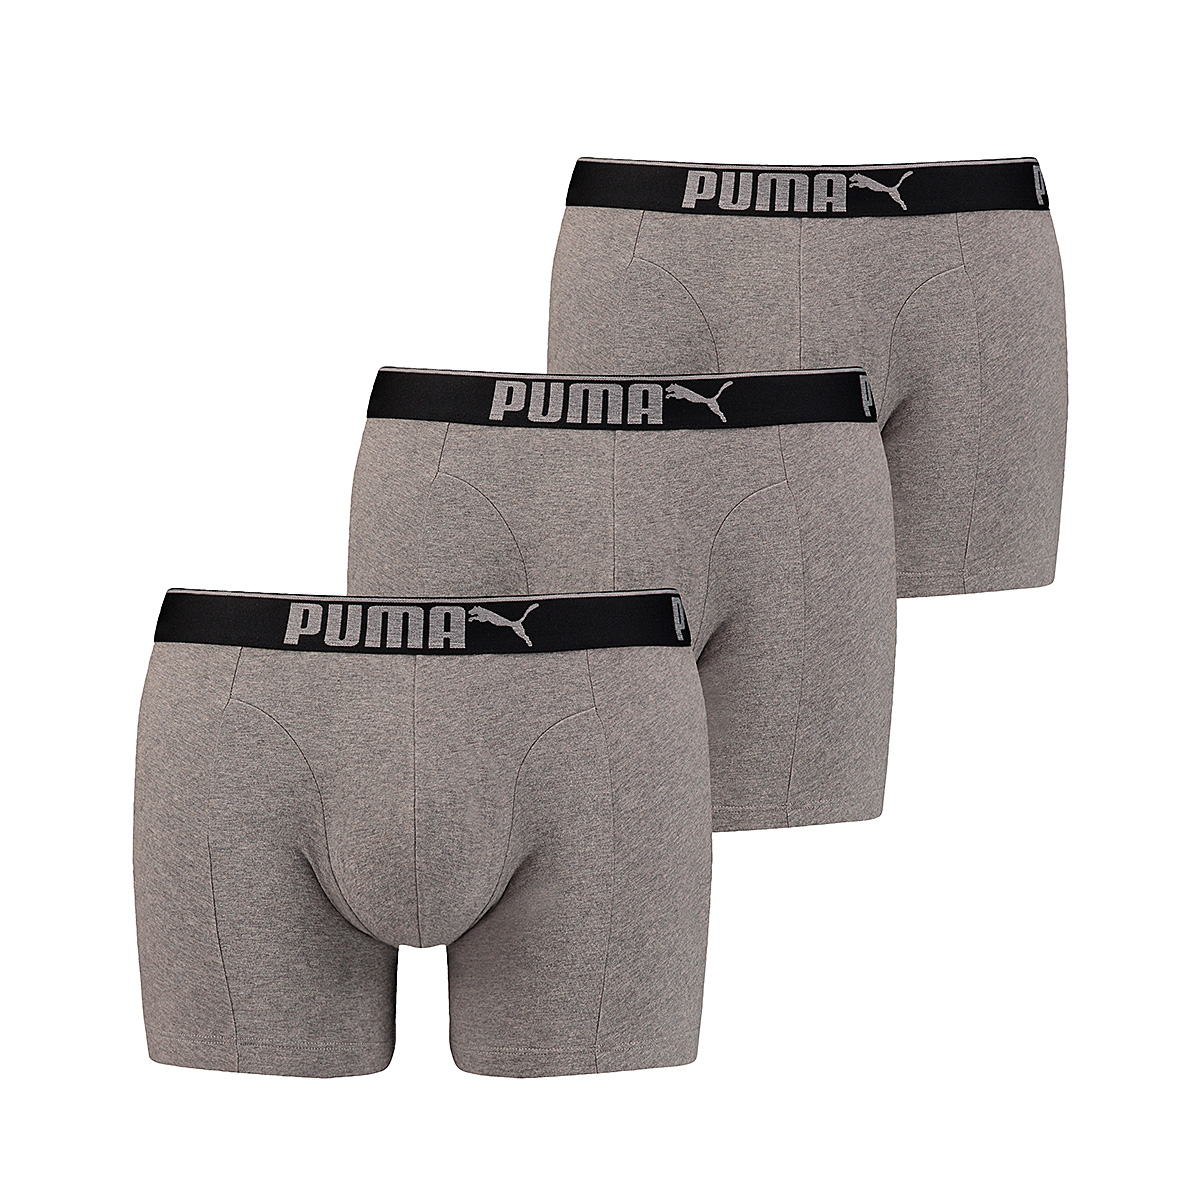 PUMA Mens Premium Sueded Cotton Men's Boxers (3 Pack) Boxer Shorts, Grey Melange, S